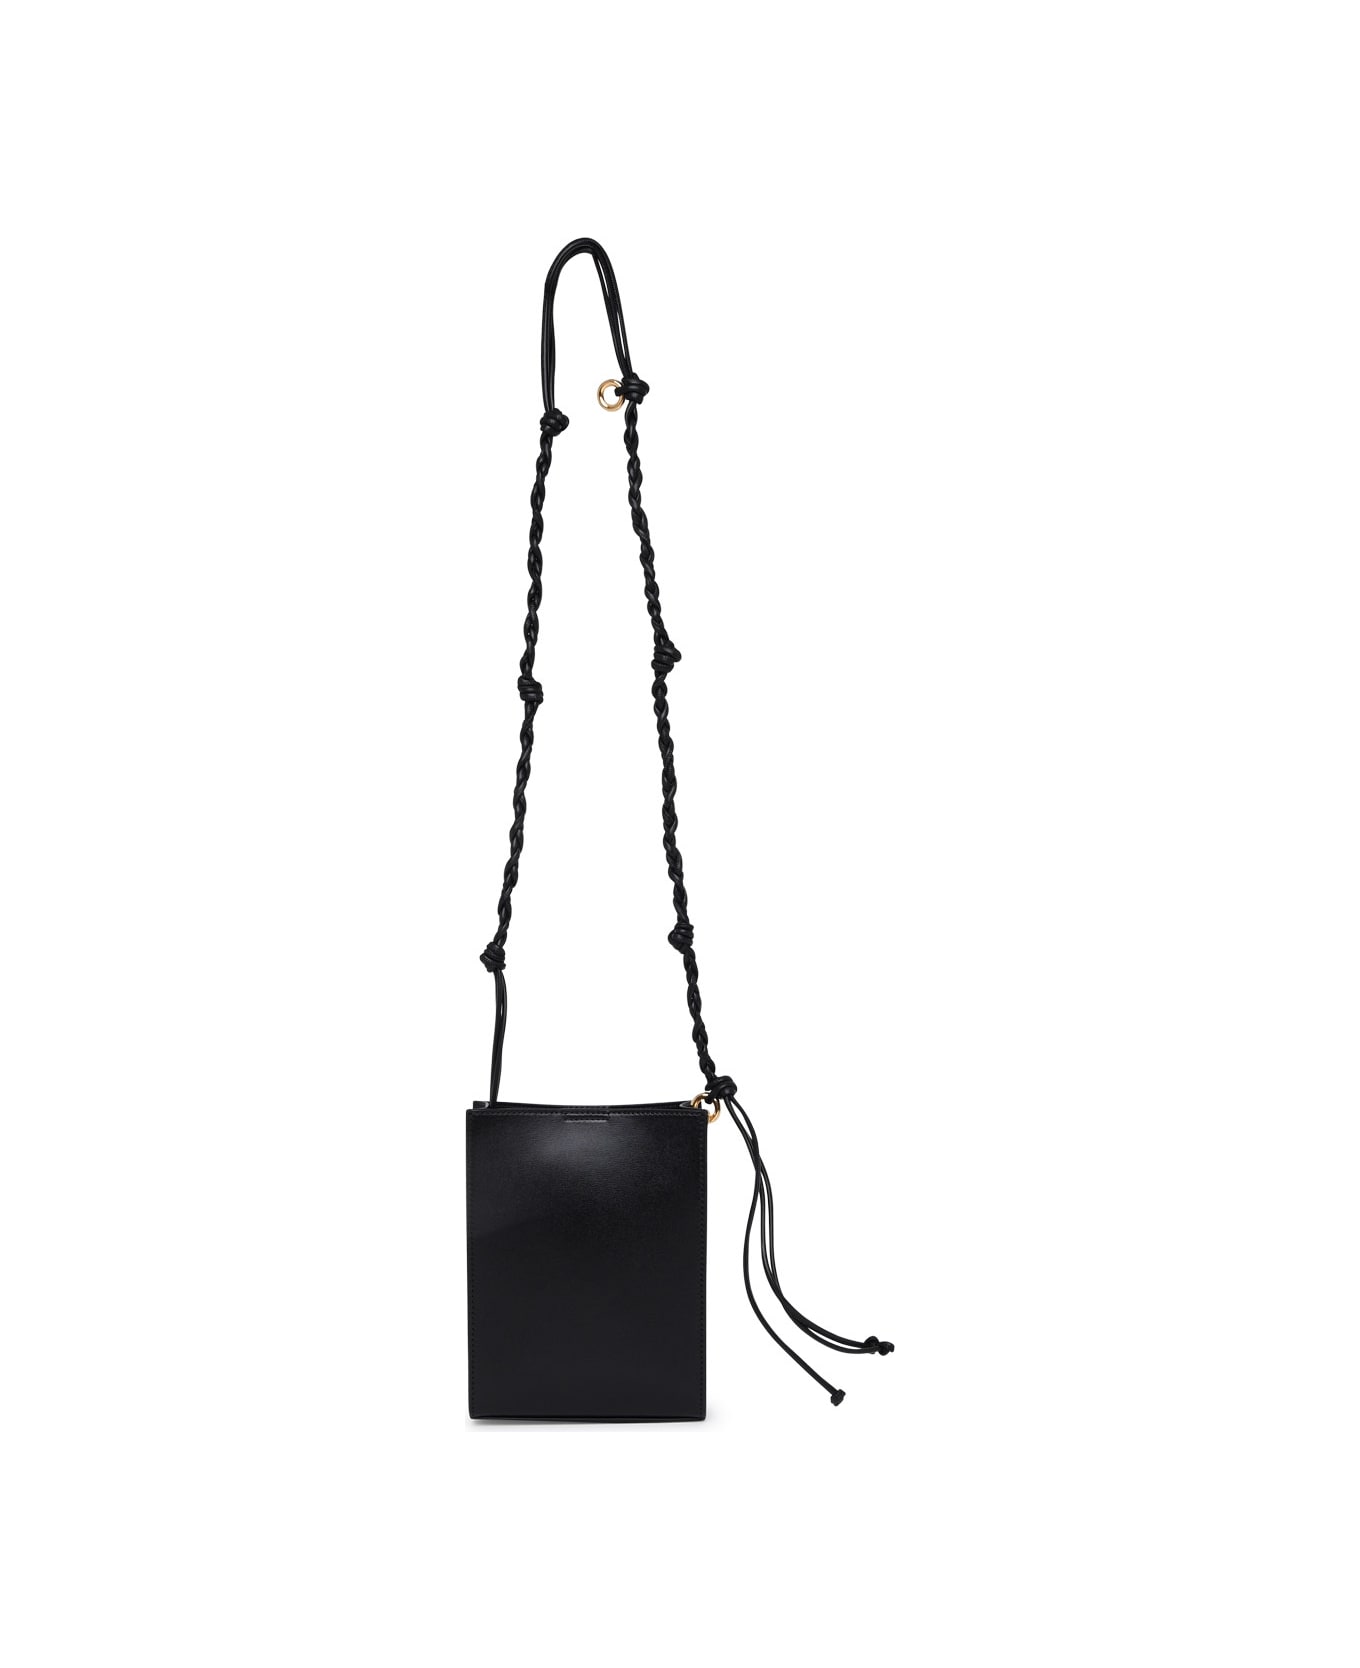 Jil Sander Tangle Ring Crossbody Bag In Black Leather - Black